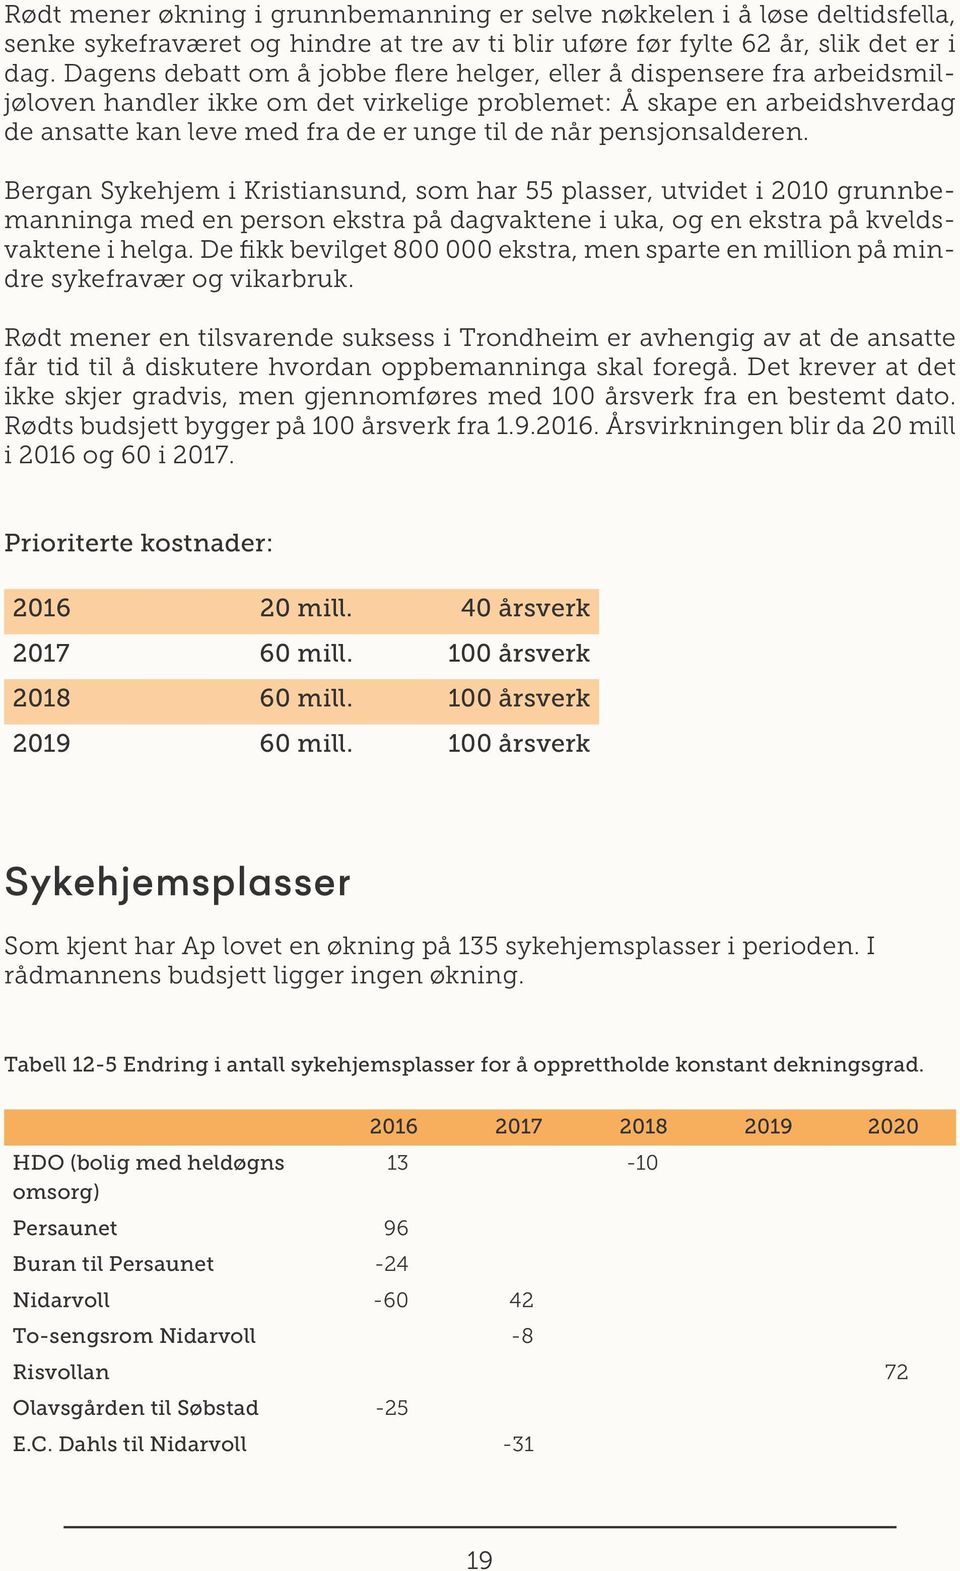 pensjonsalderen. Bergan Sykehjem i Kristiansund, som har 55 plasser, utvidet i 2010 grunnbemanninga med en person ekstra på dagvaktene i uka, og en ekstra på kveldsvaktene i helga.